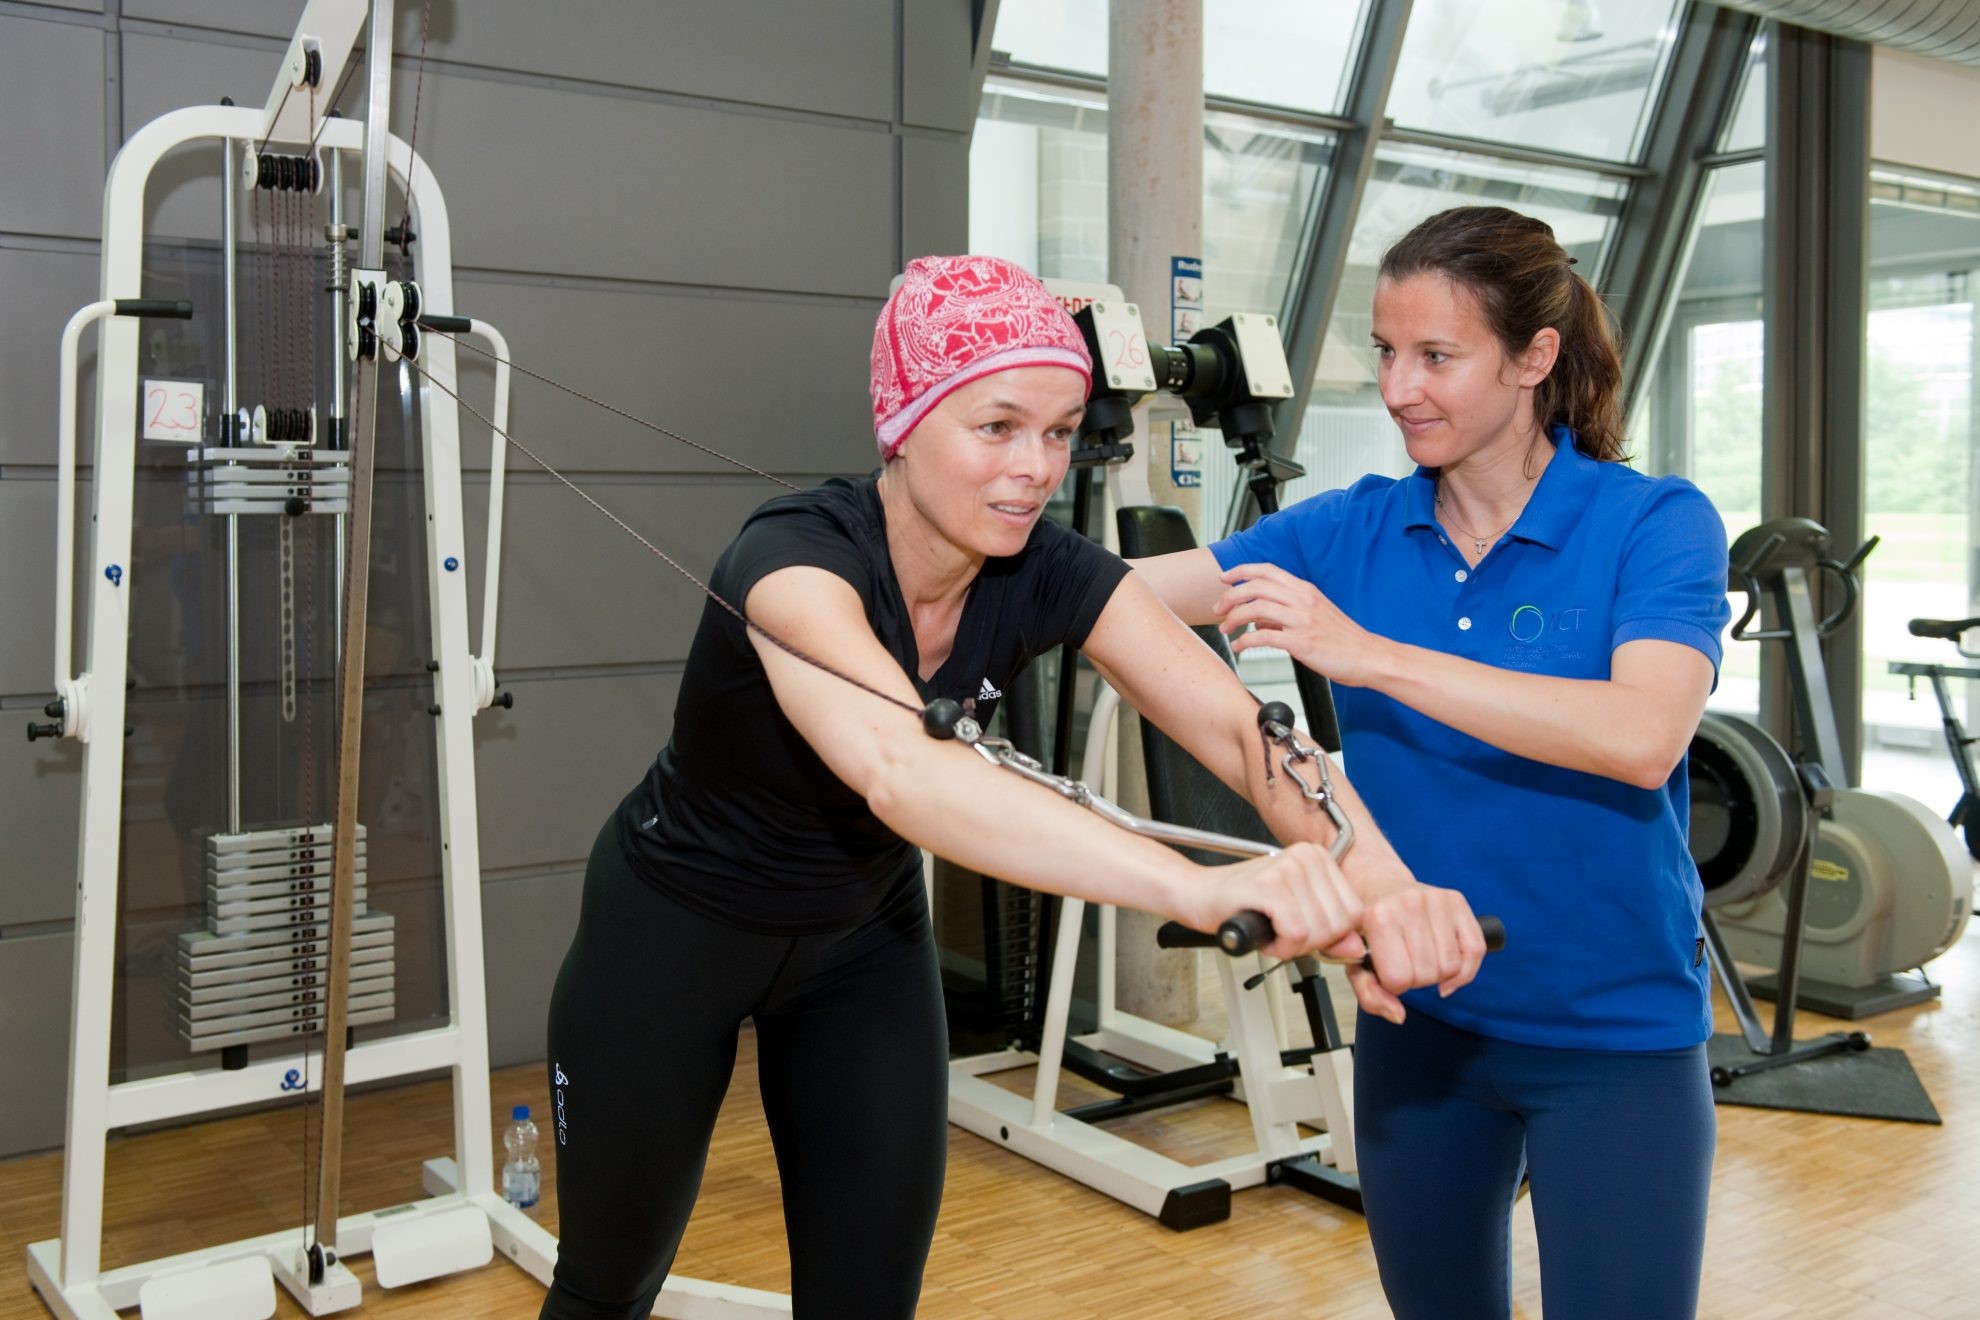 Vận động thể lực có vai trò đặc biệt quan trọng cho người bệnh ung thư